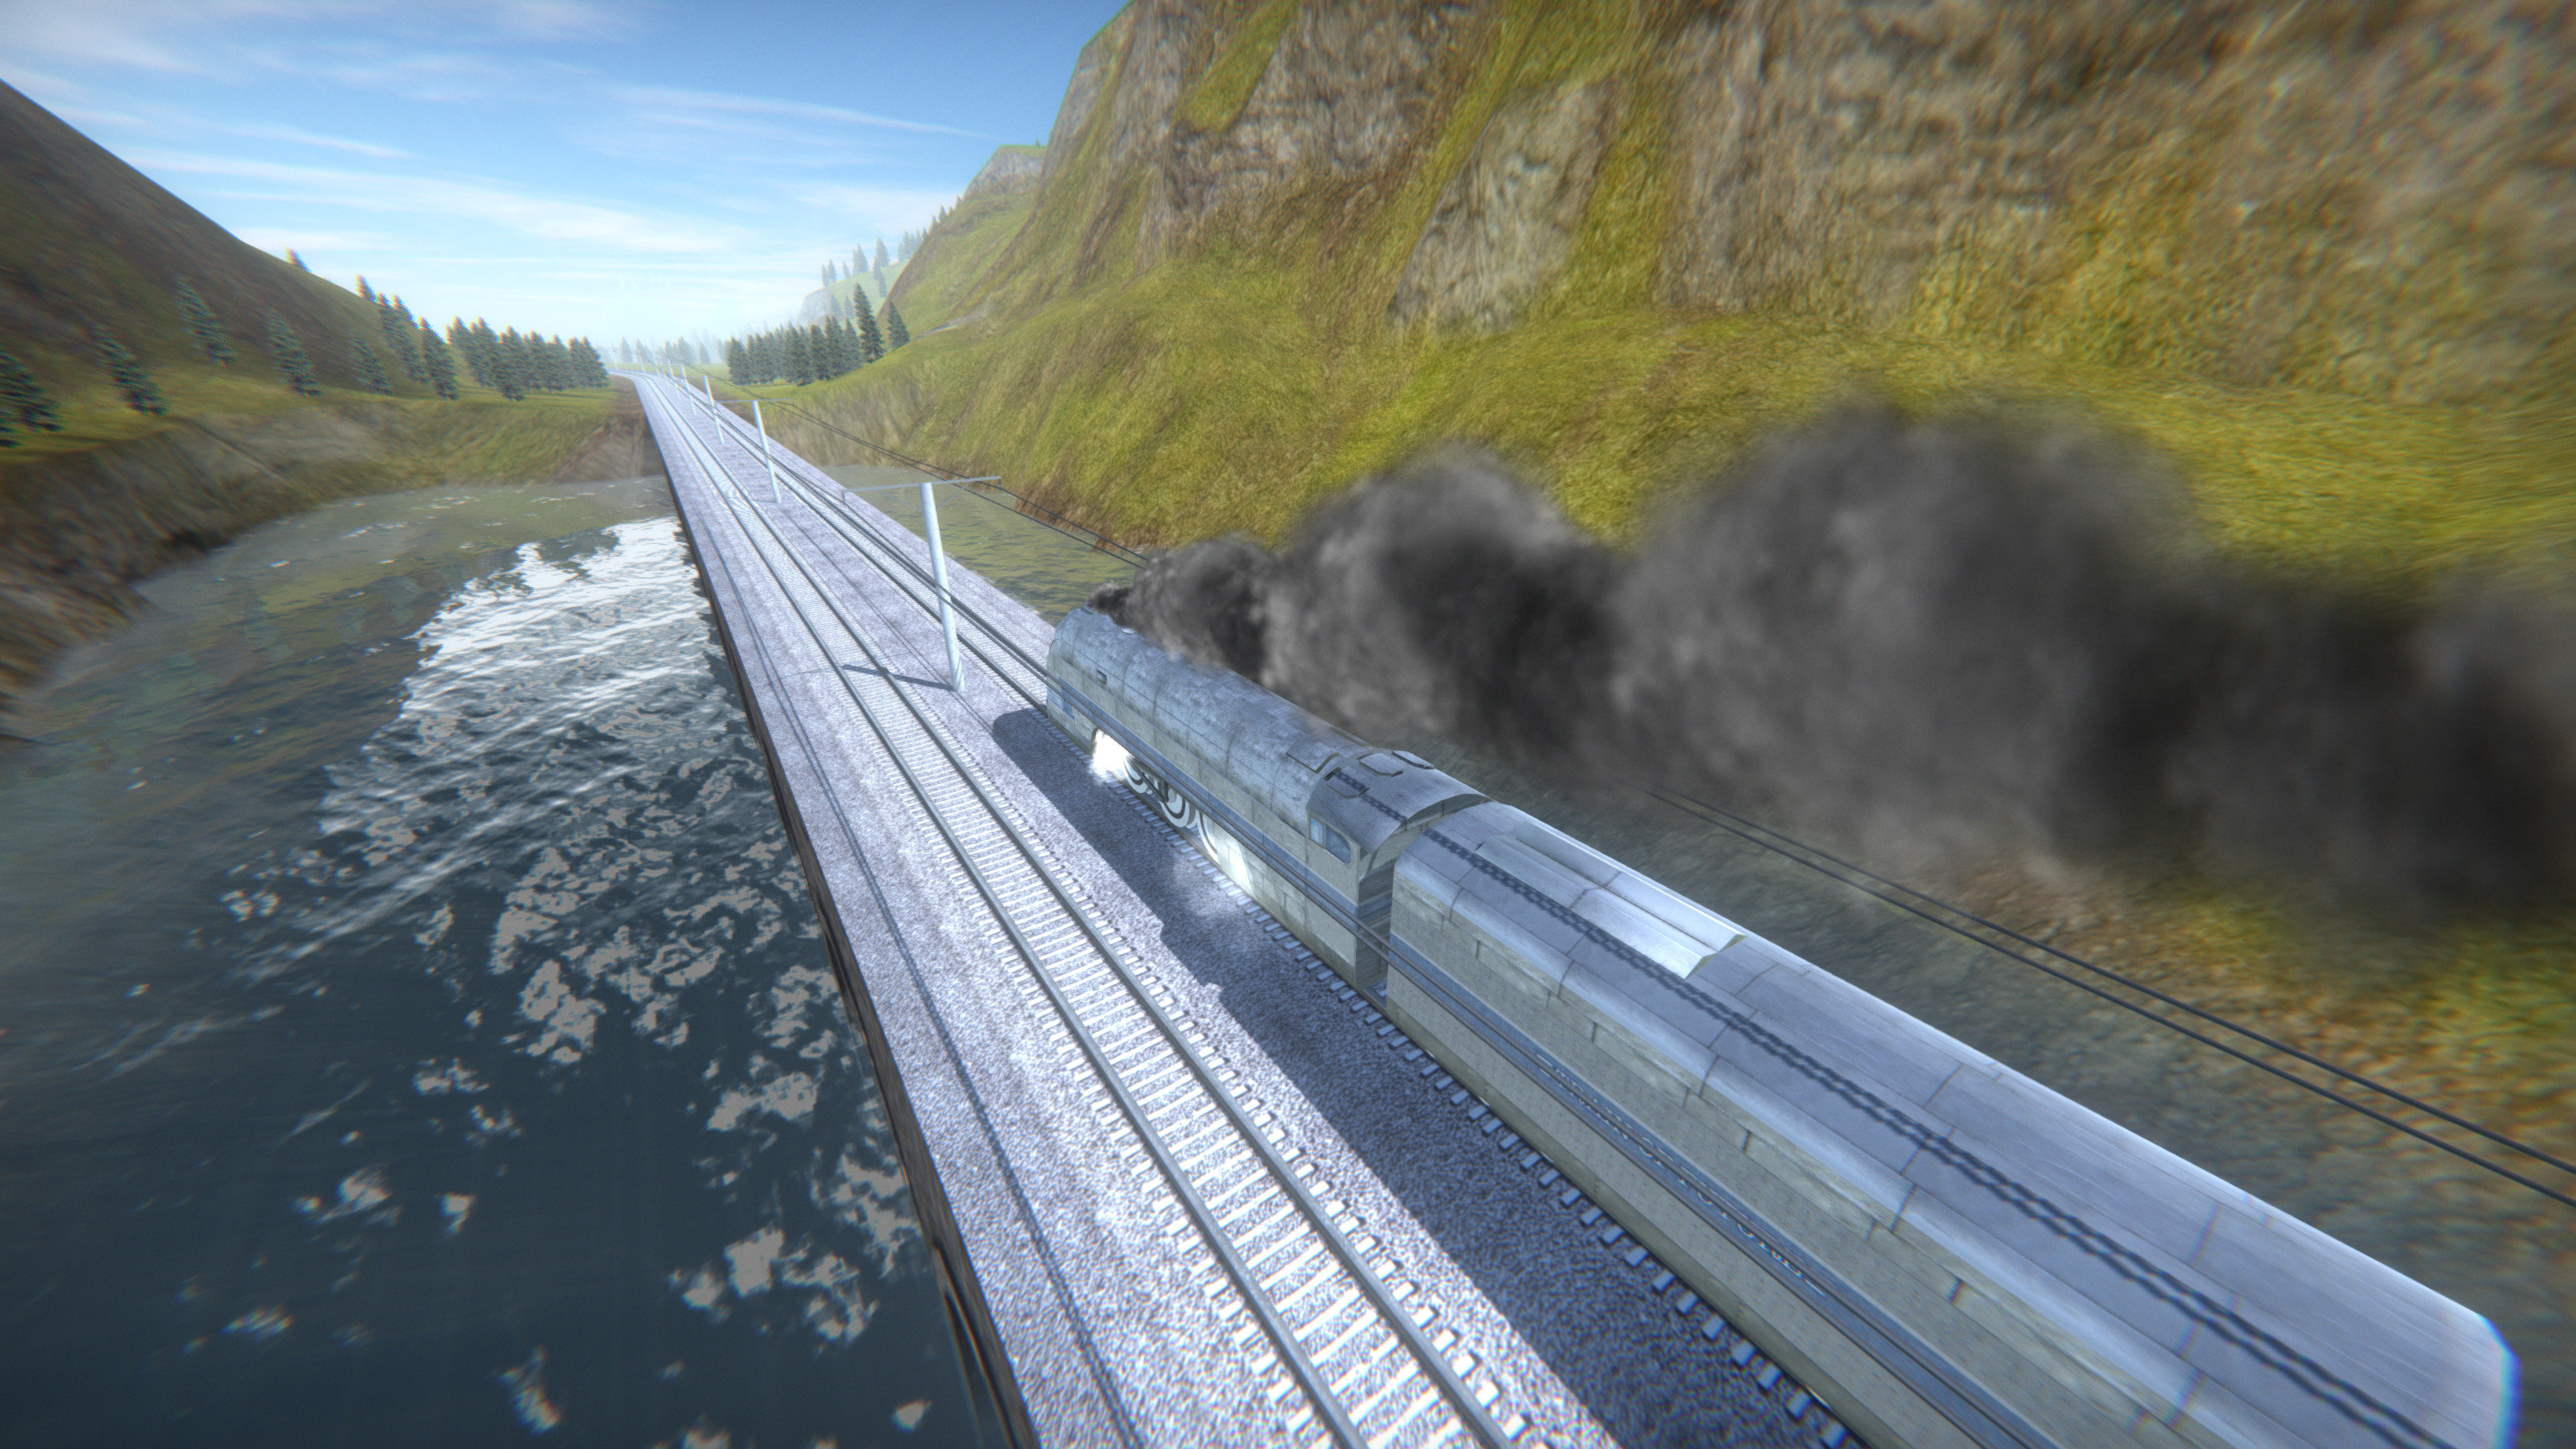 High Speed Trains screenshot